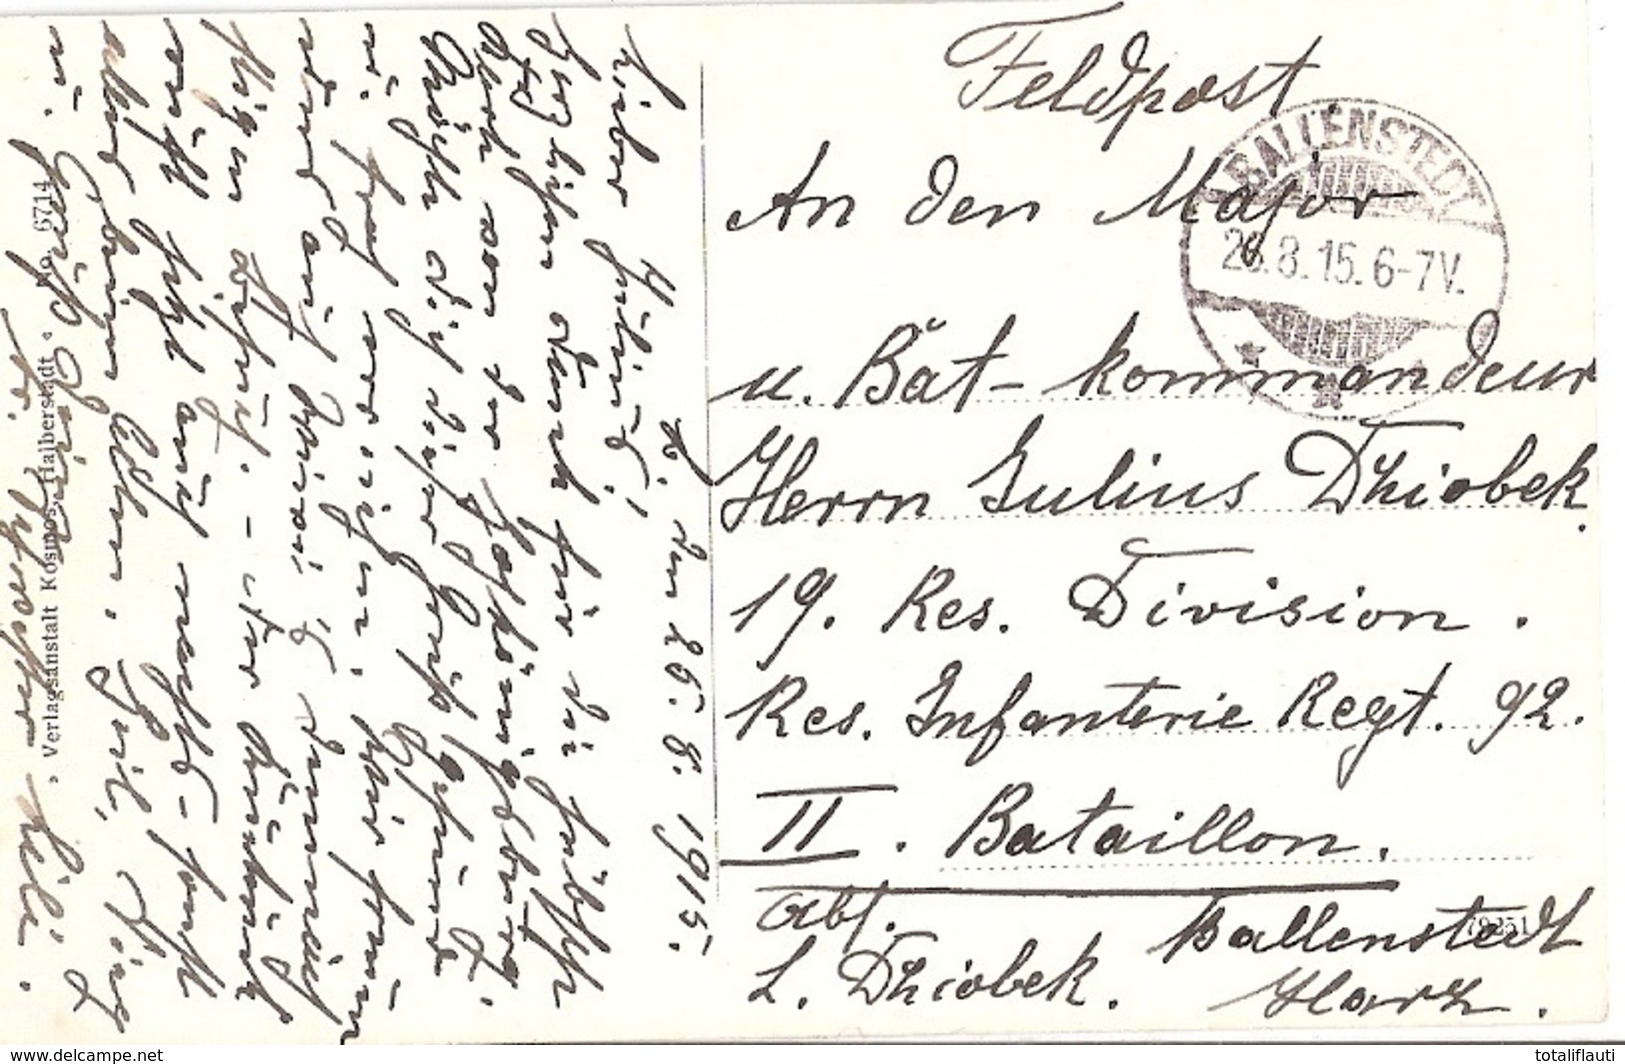 BALLENSTEDT Harz Alter Markt Mit Altem Rathaus Belebt 26.8.1915 Als Feldpost An Bataillonskommandeur Im Westen - Ballenstedt